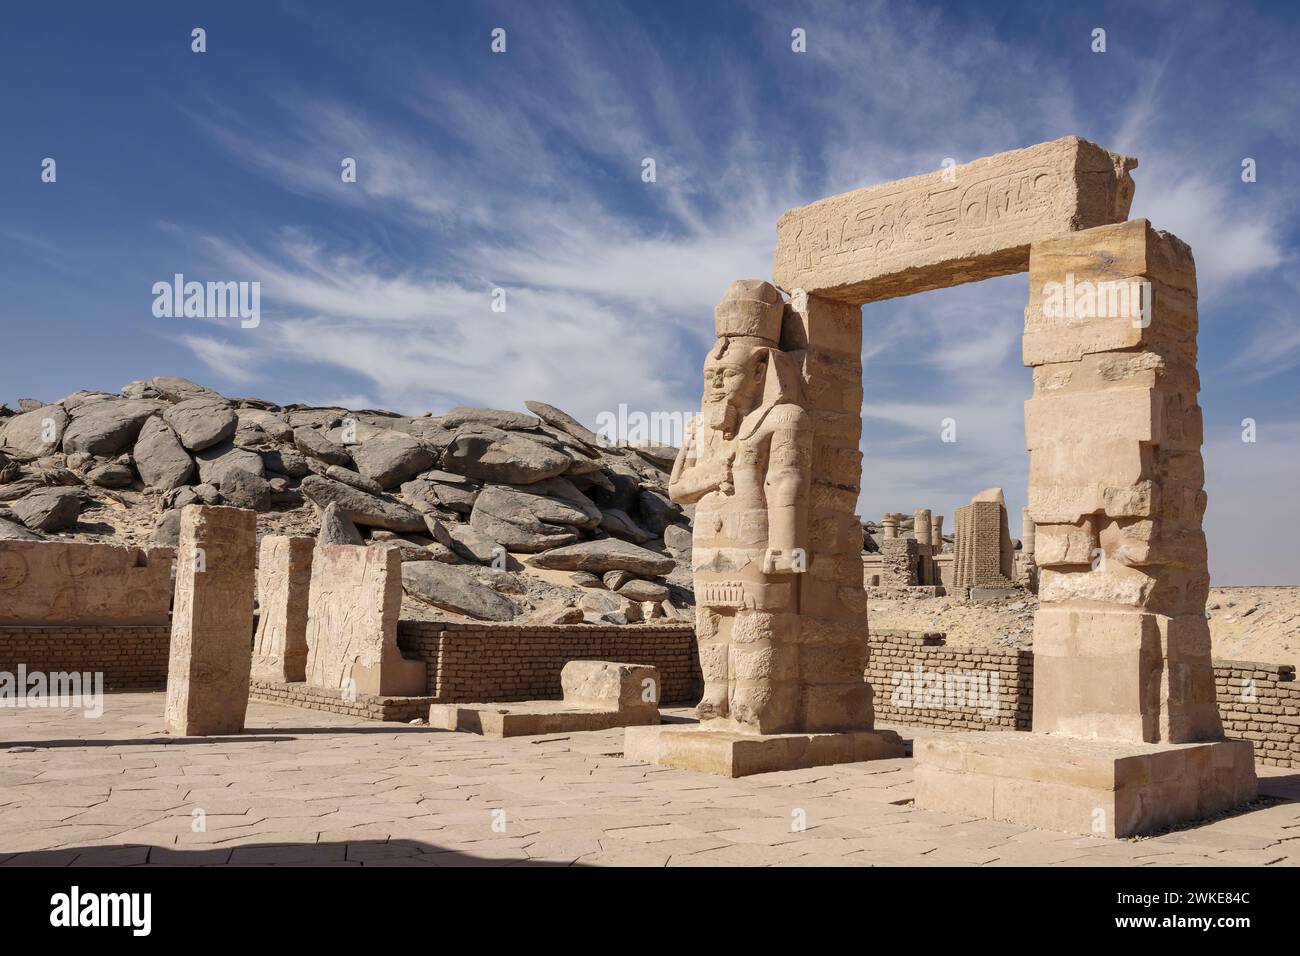 Der Tempel von Gerf Hussein auf der Insel Neu Kalabsha in der Nähe von Assuan, Ägypten Stockfoto